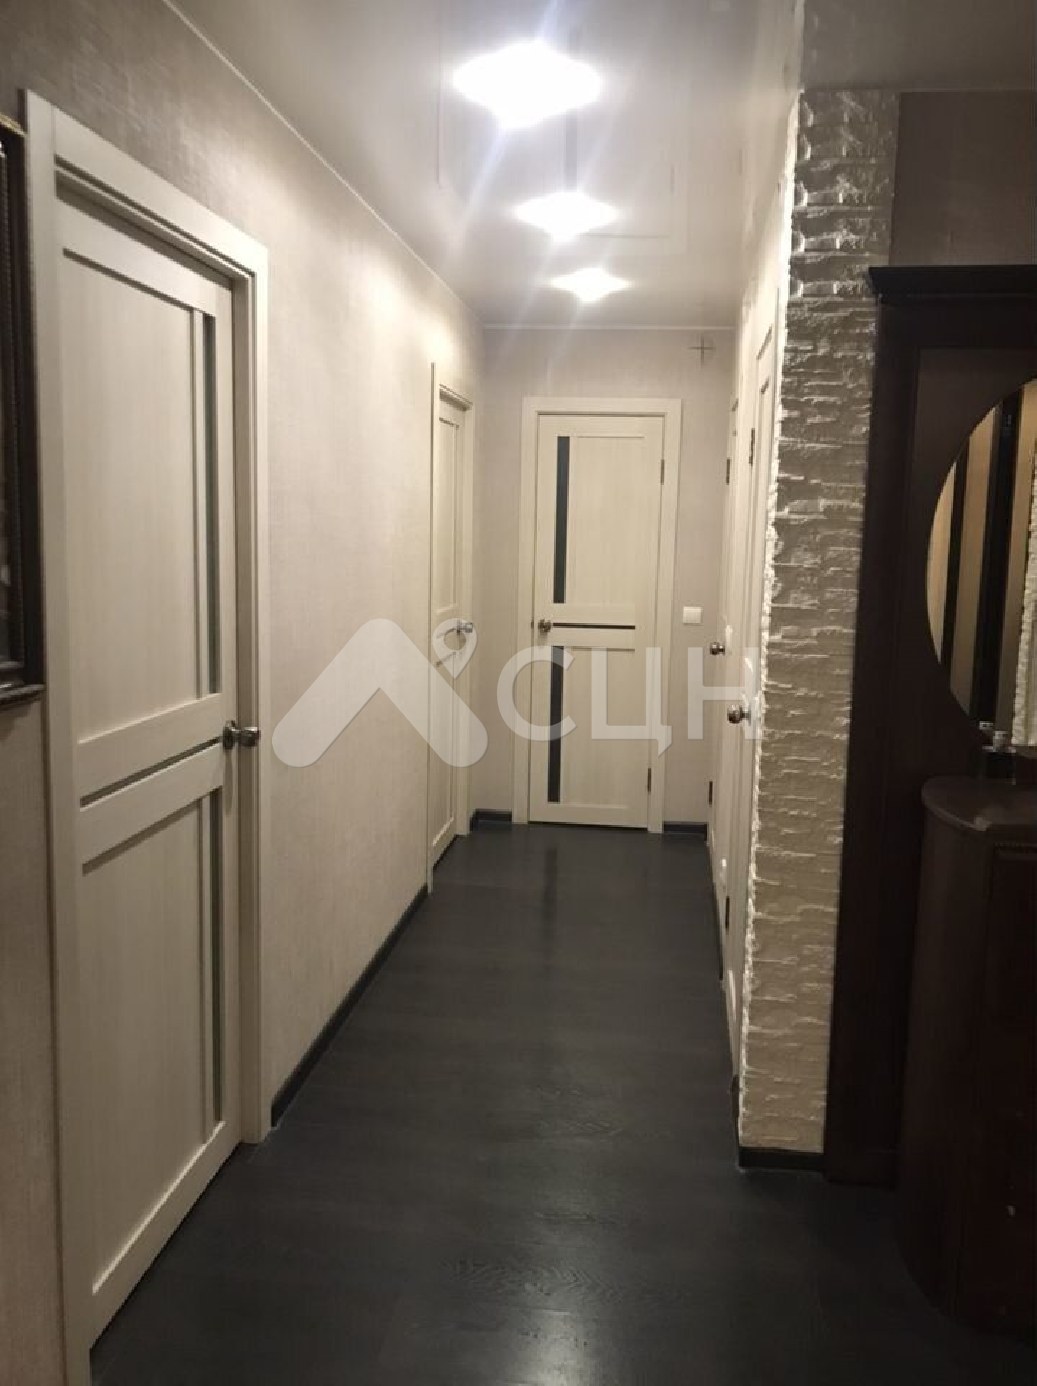 циан саров квартиры
: Г. Саров, улица Негина, 28, 3-комн квартира, этаж 4 из 5, продажа.